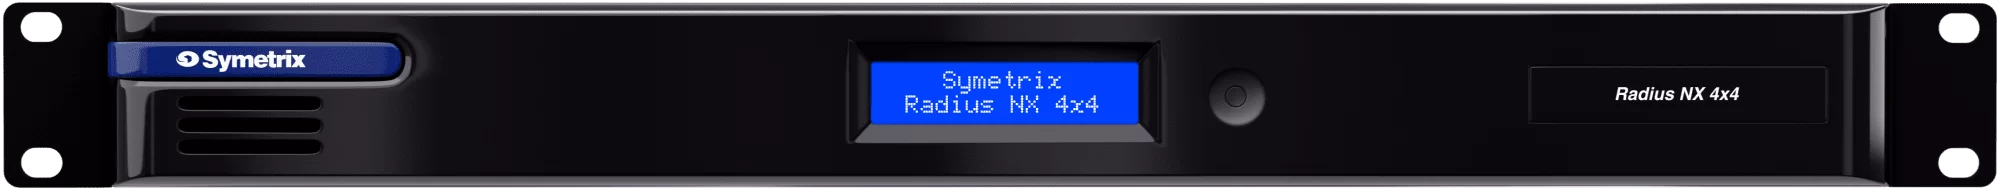 Radius-NX-4x4-FRONT-2000x190 (1)